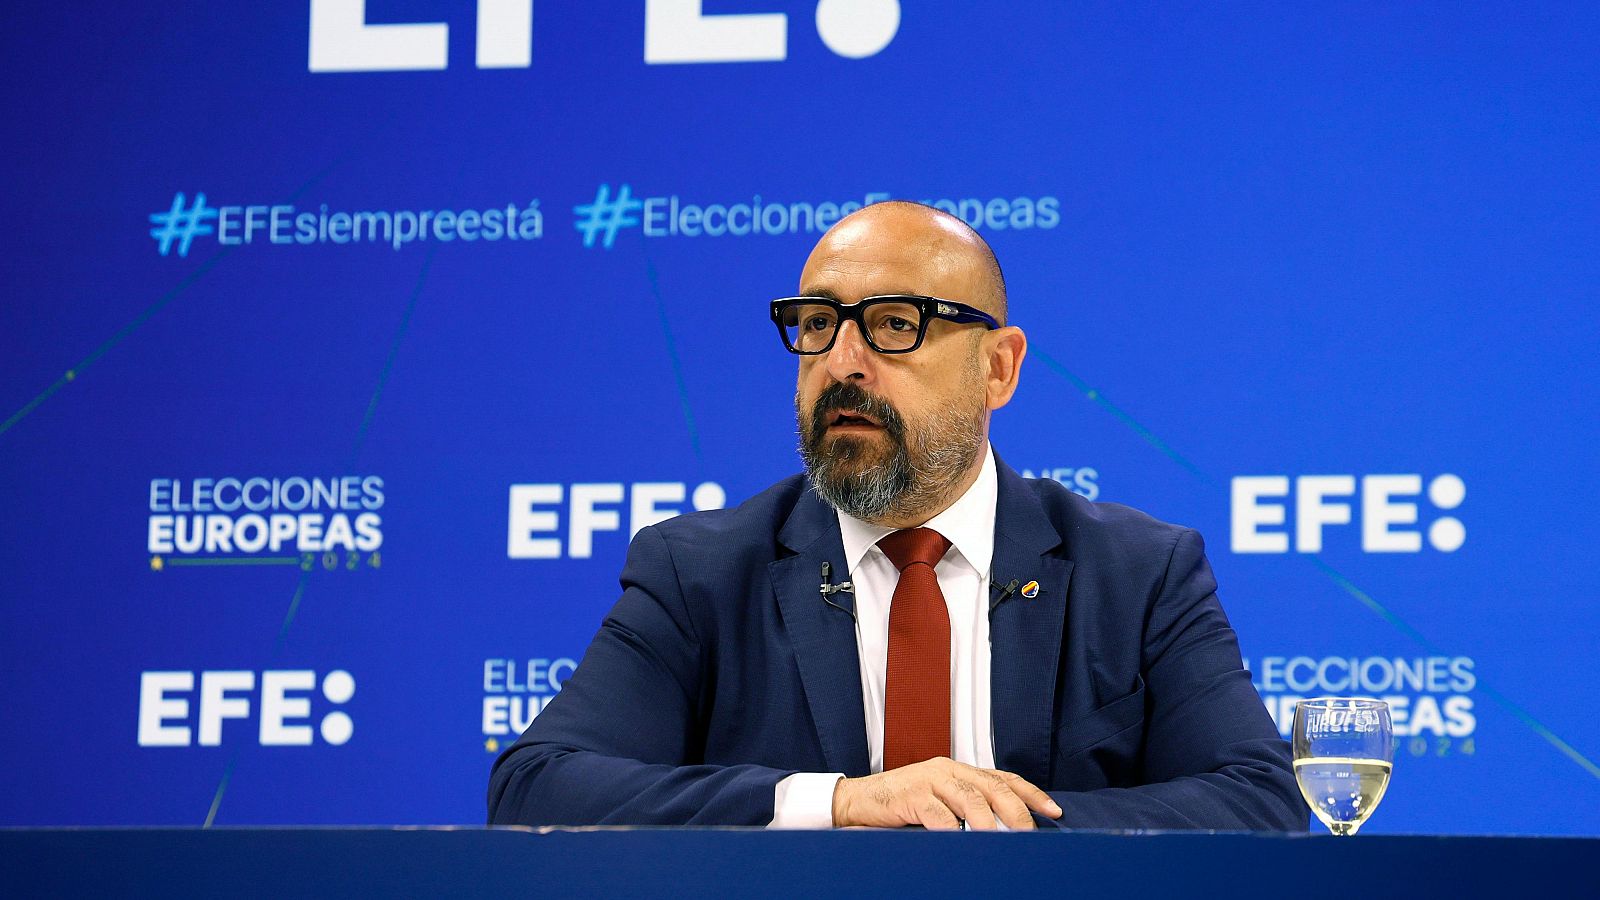 El cabeza de lista de Ciudadanos a las elecciones europeas, Jordi Cañas, durante la rueda de prensa de EFE